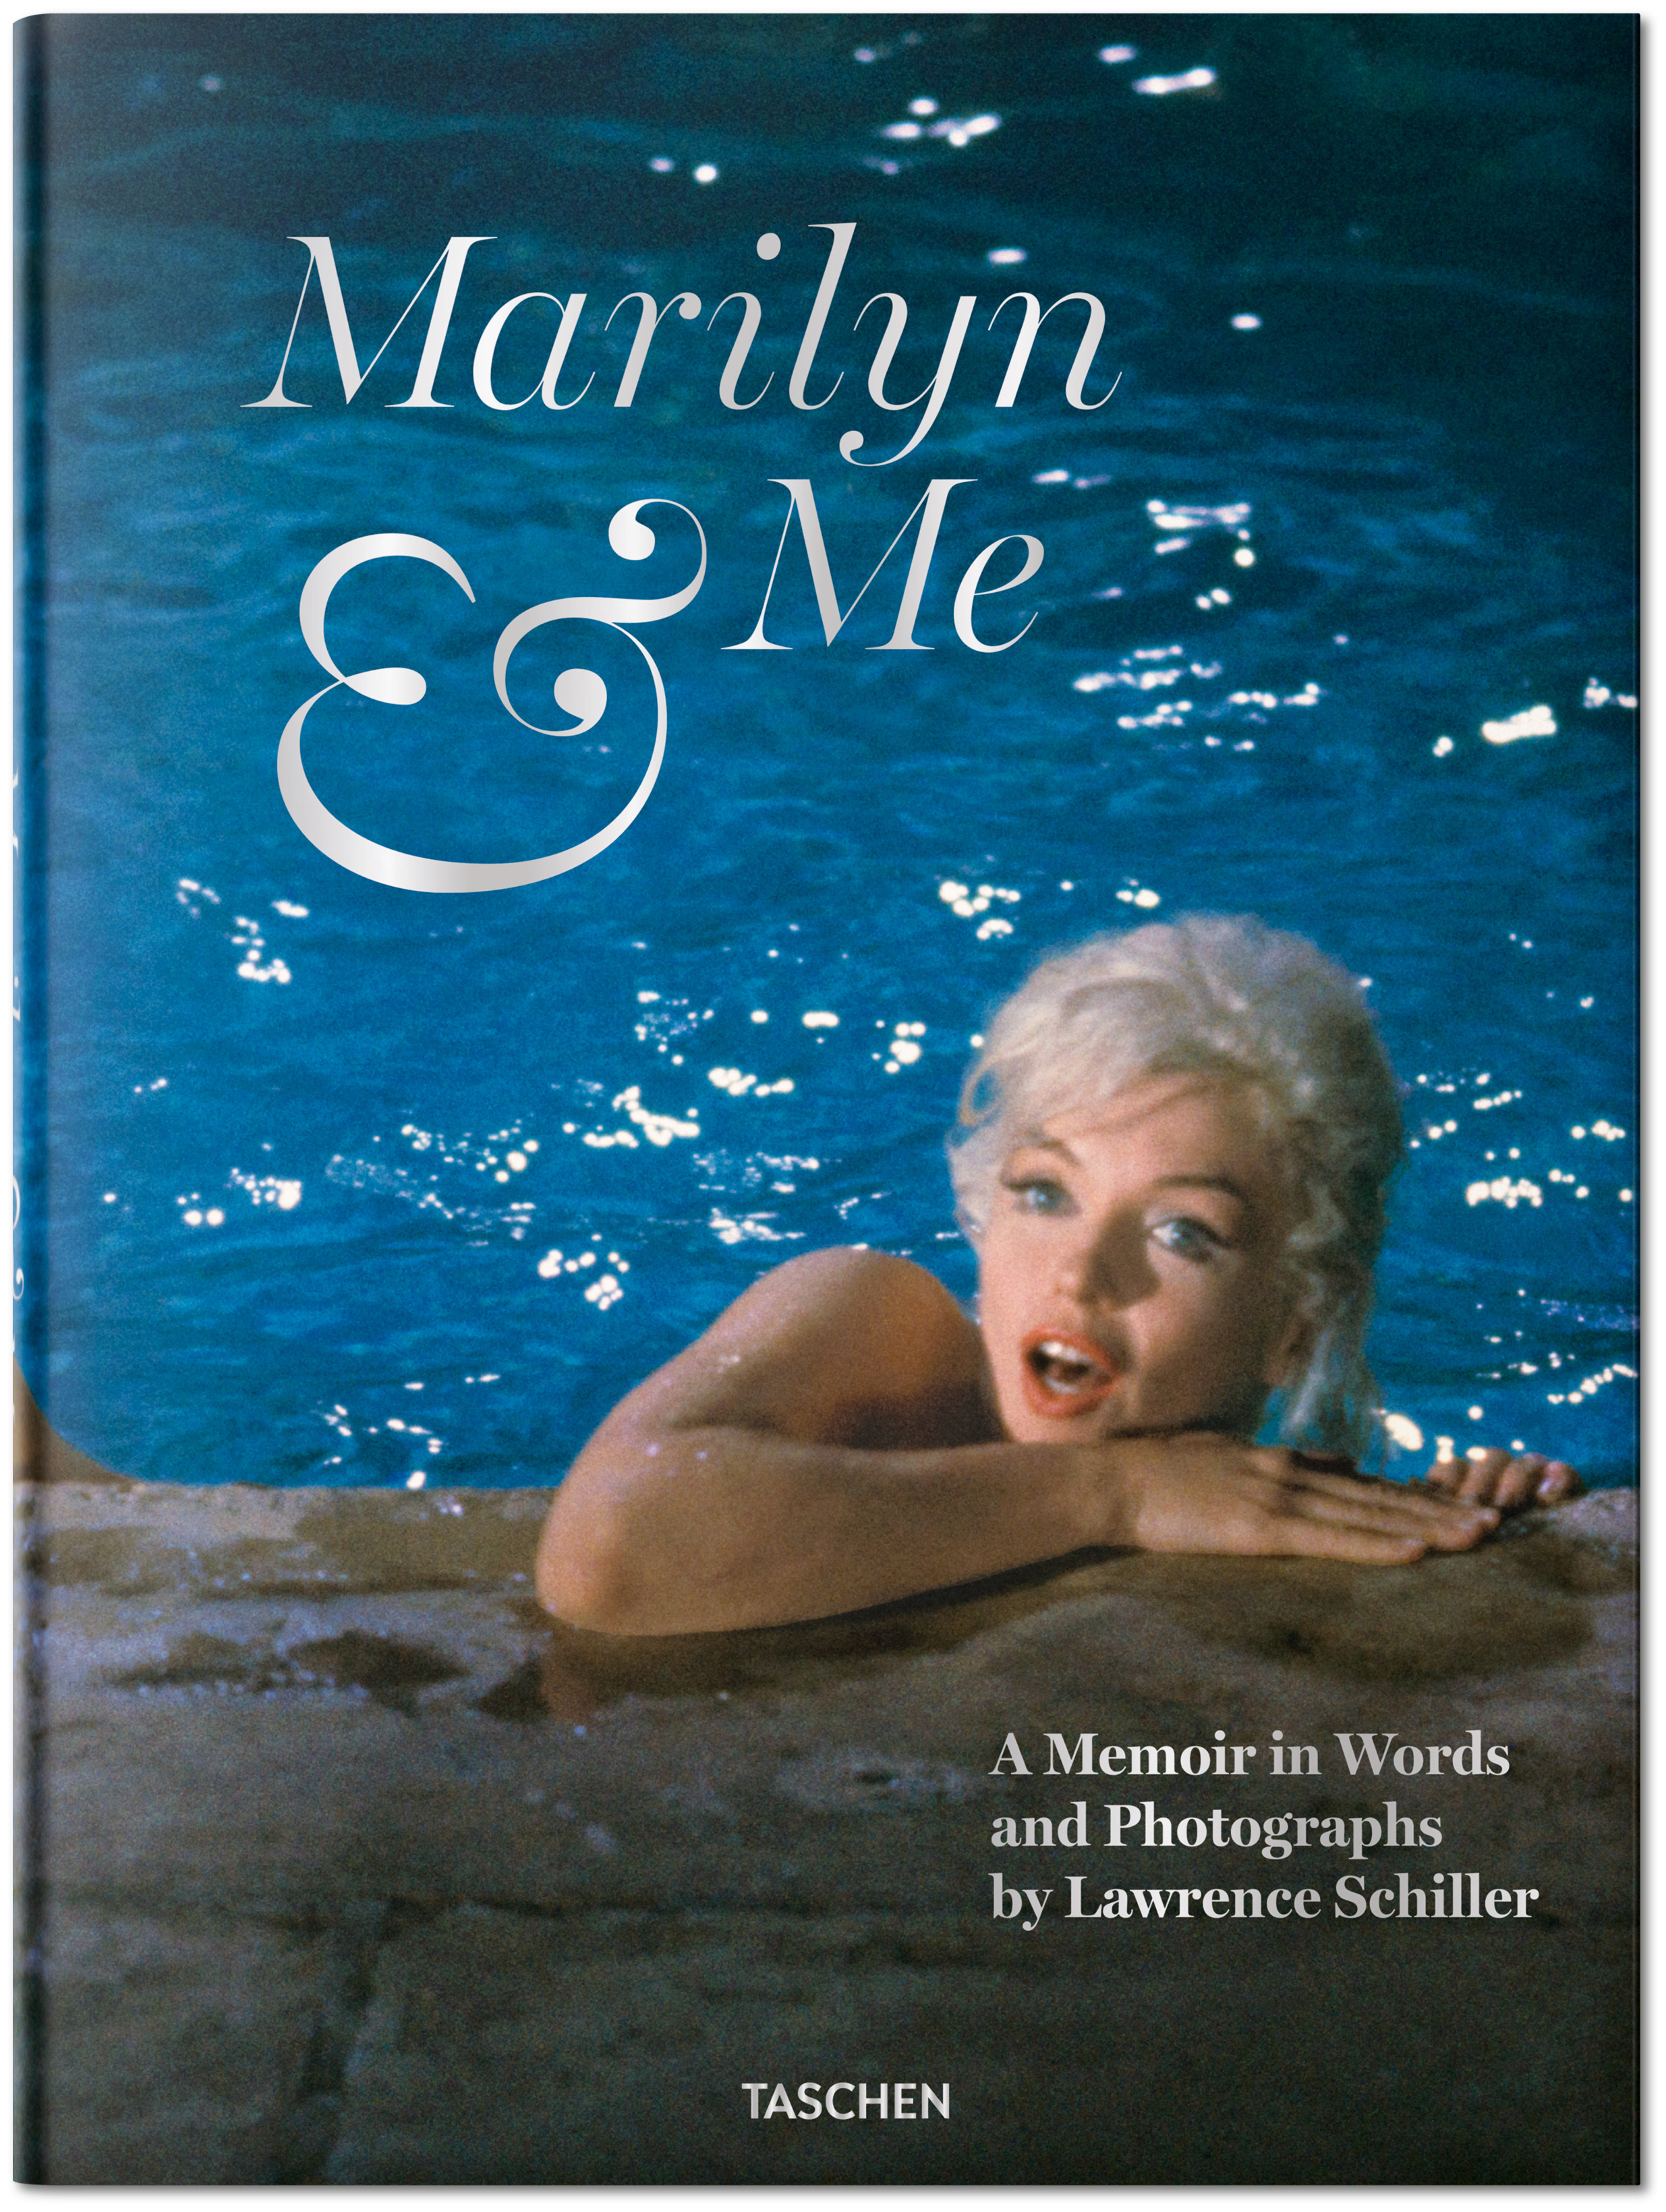 Nos 60 anos da morte de Marilyn Monroe, conheça 11 filmes imperdíveis da  atriz - Estadão